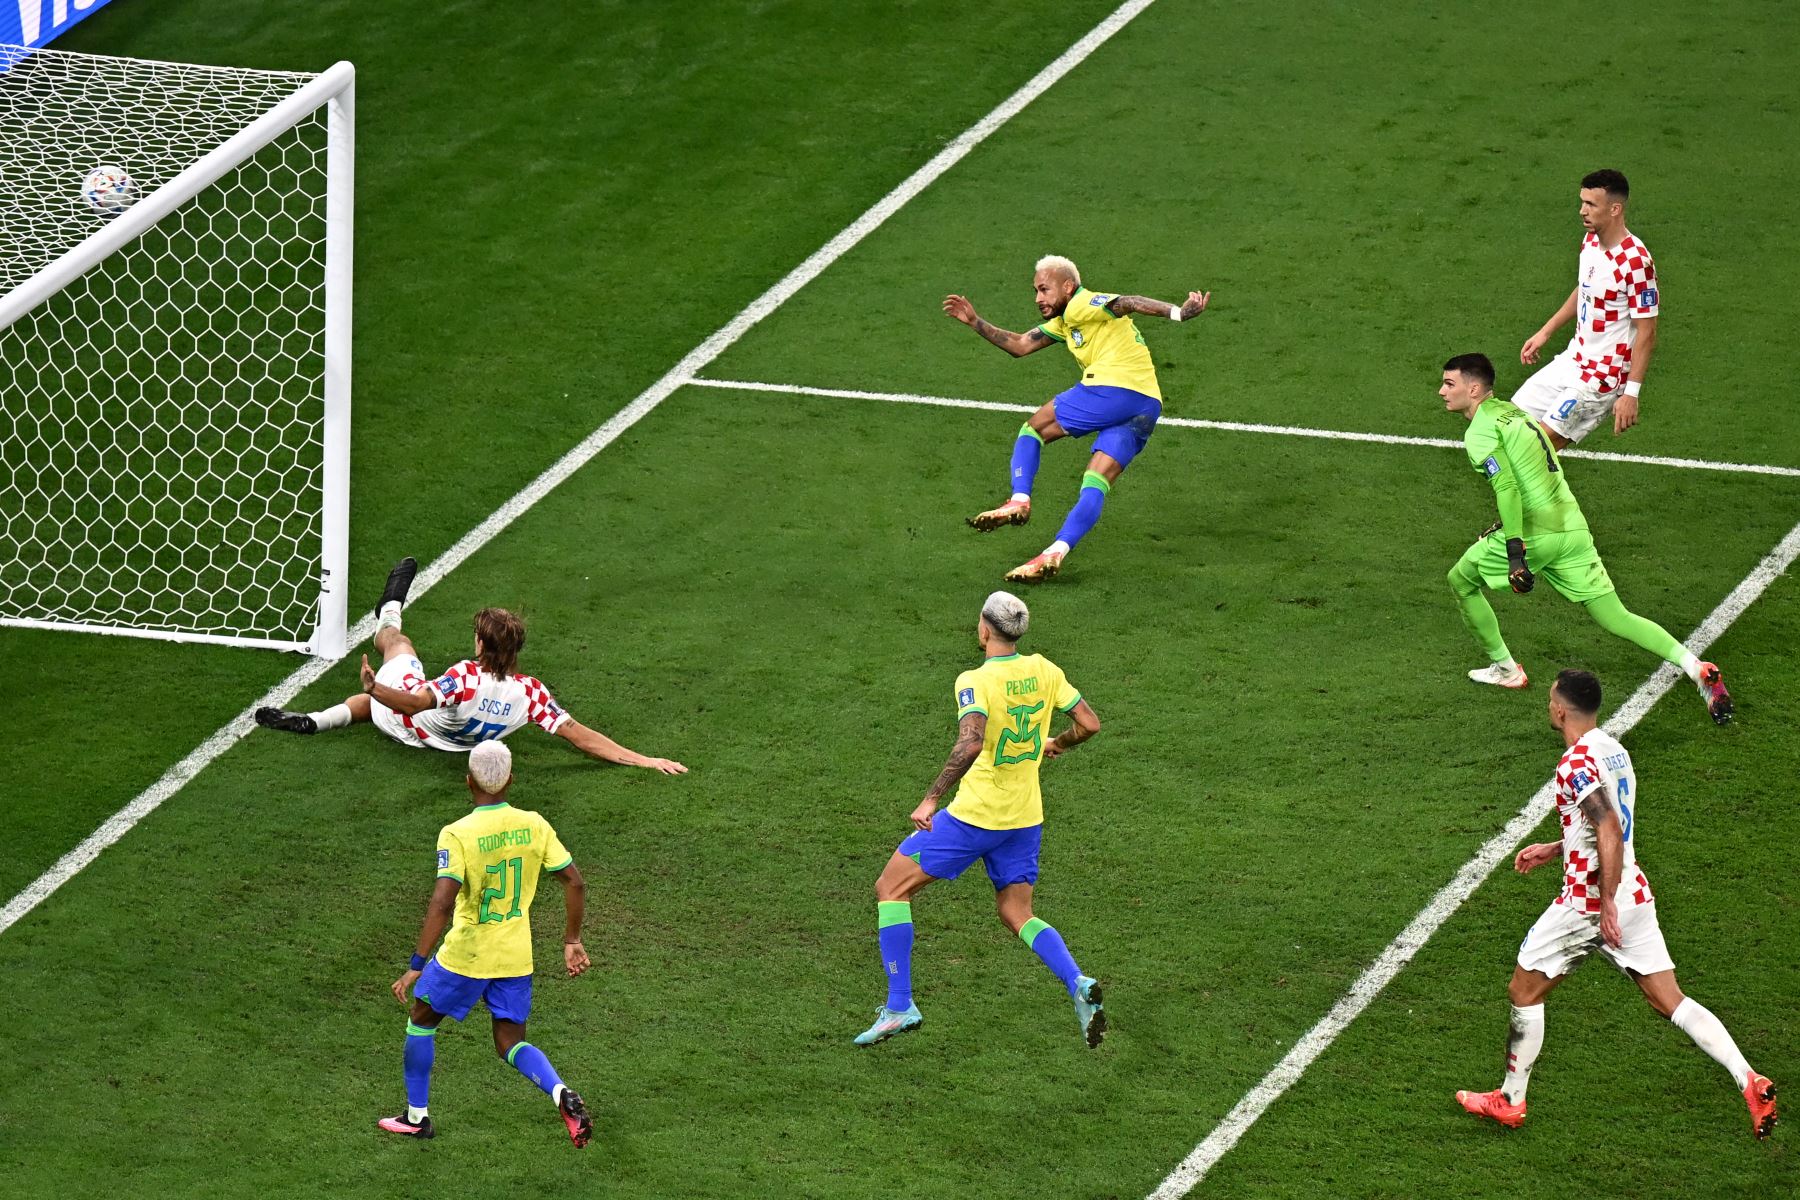 El delantero brasileño Neymar anota el primer gol de su equipo durante el partido de fútbol de cuartos de final de la Copa Mundial Qatar 2022 entre Croacia y Brasil.
Foto: AFP